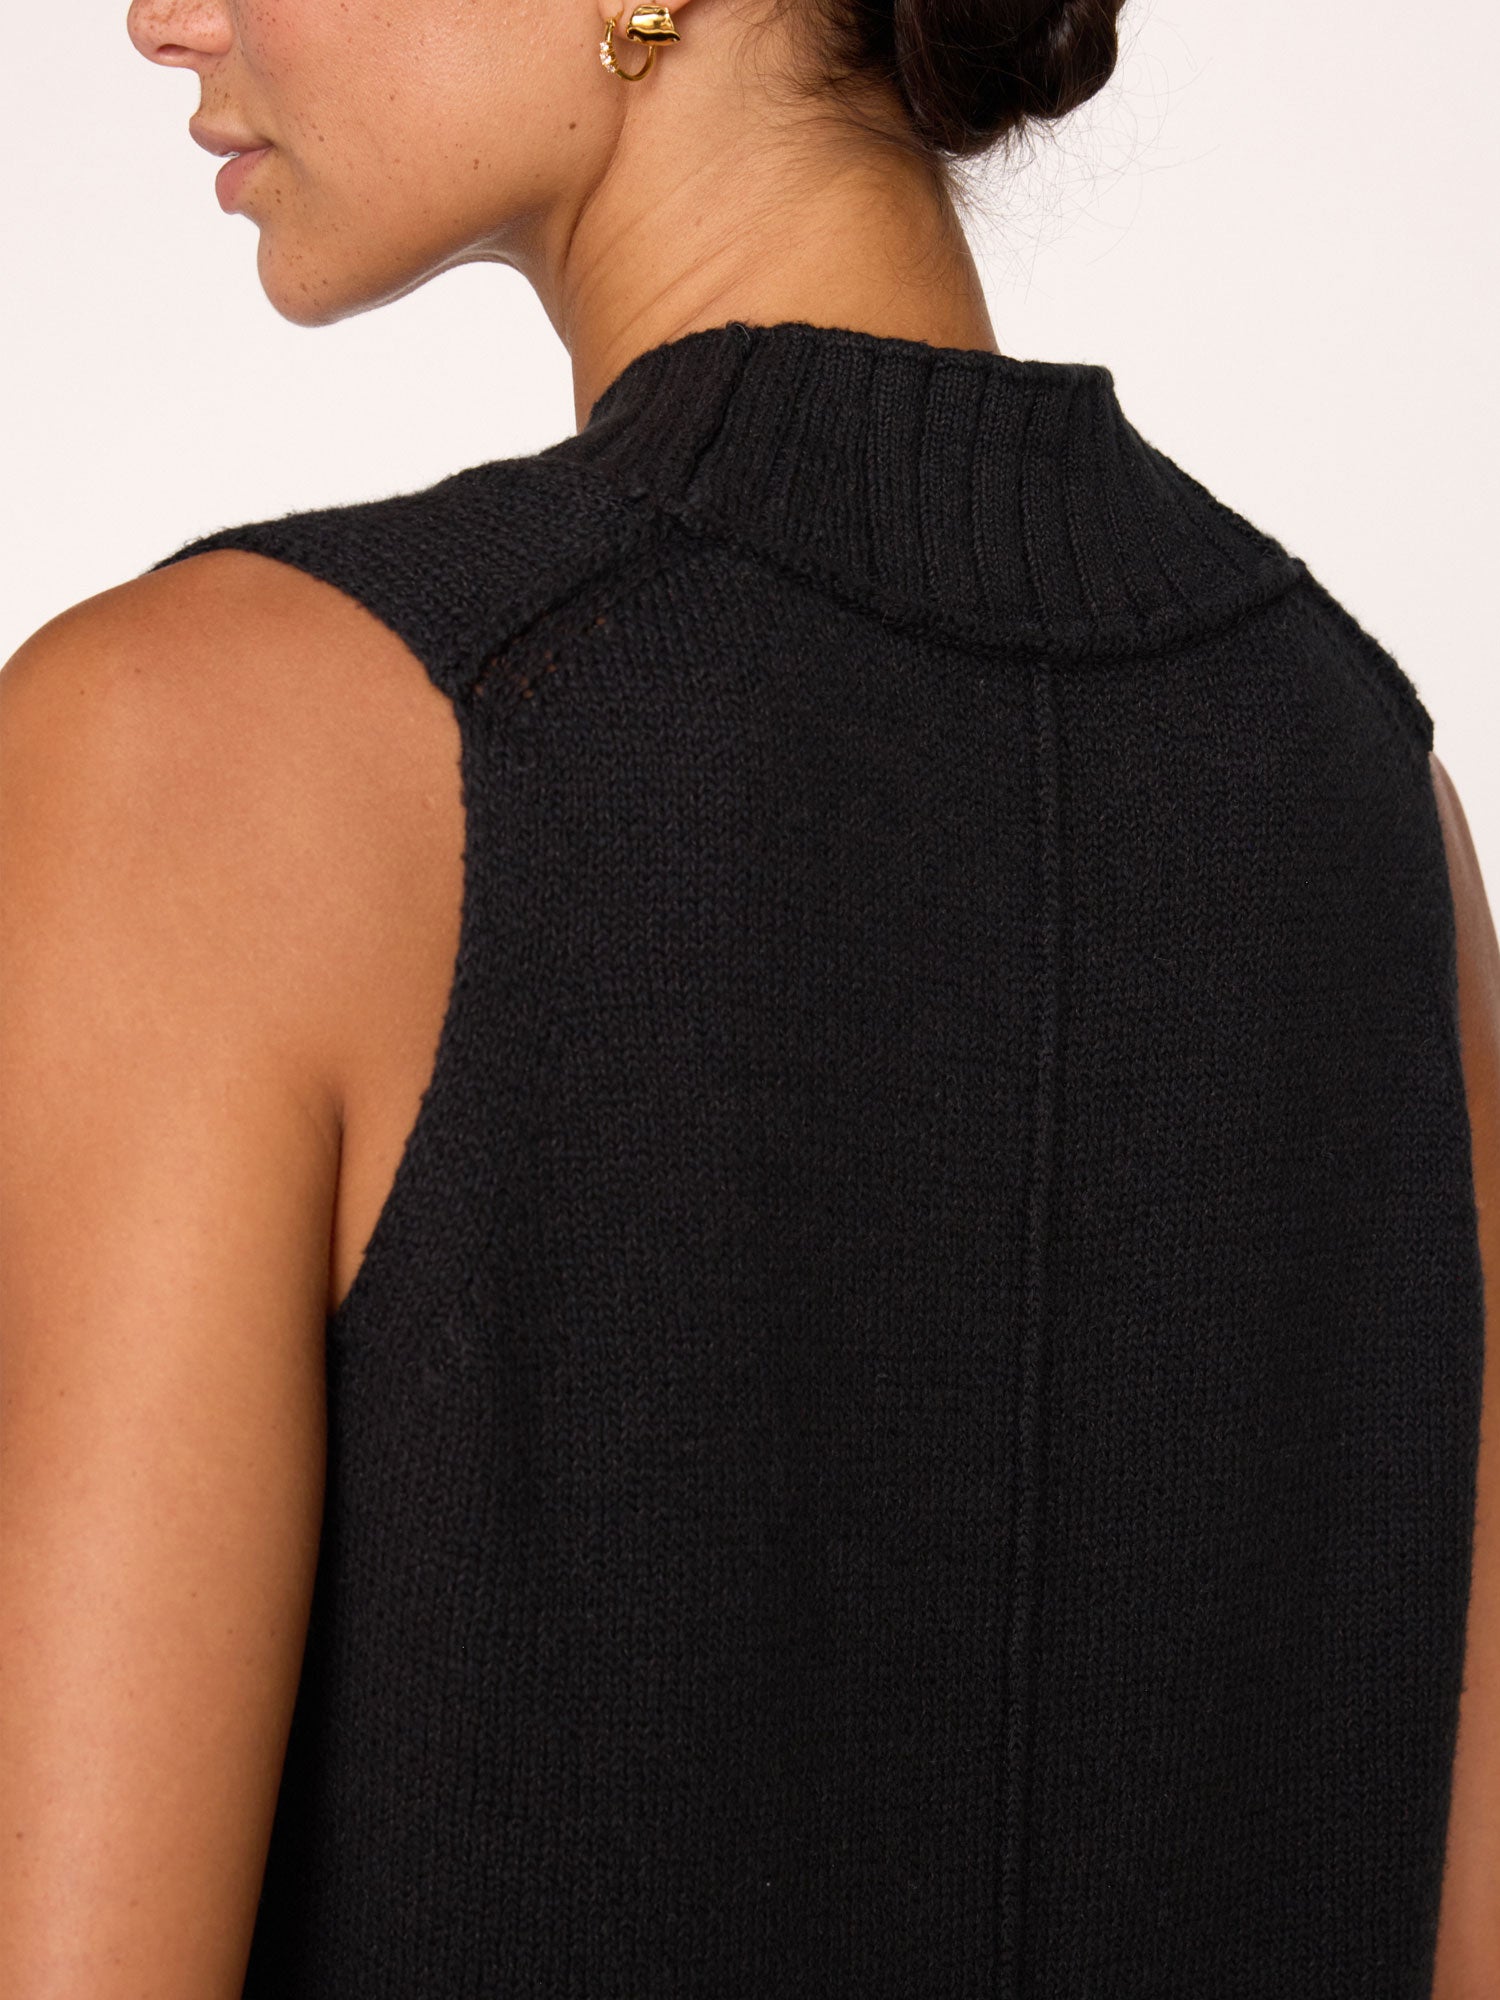 Celia black cotton sweater vest tank close up